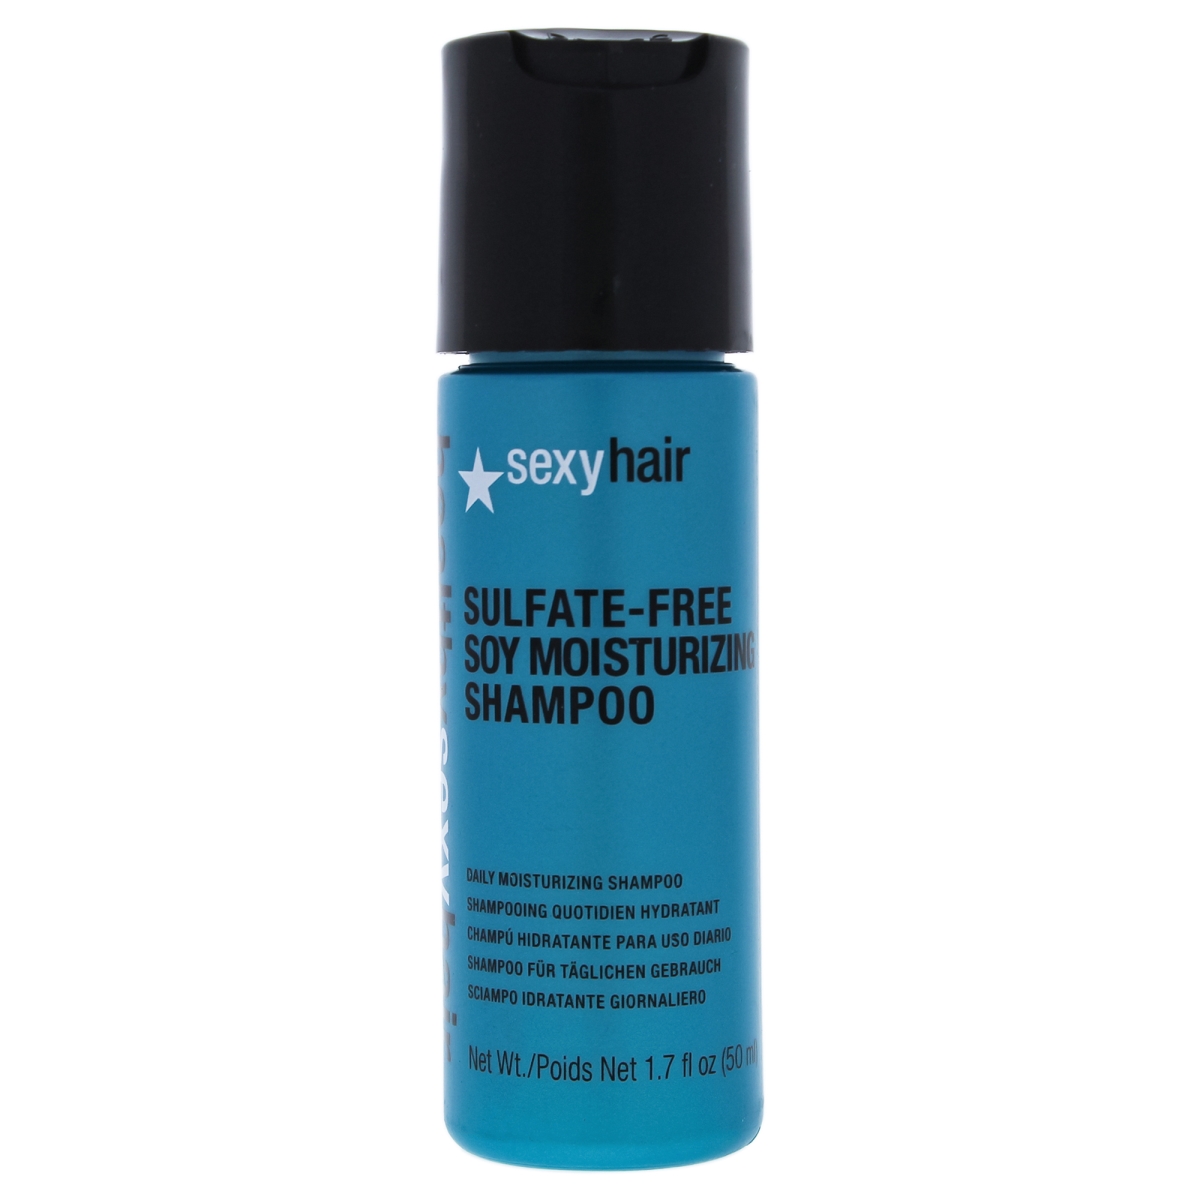 I0091262 Healthy Sulfate-free Soy Moisturizing Shampoo For Unisex - 1.7 Oz